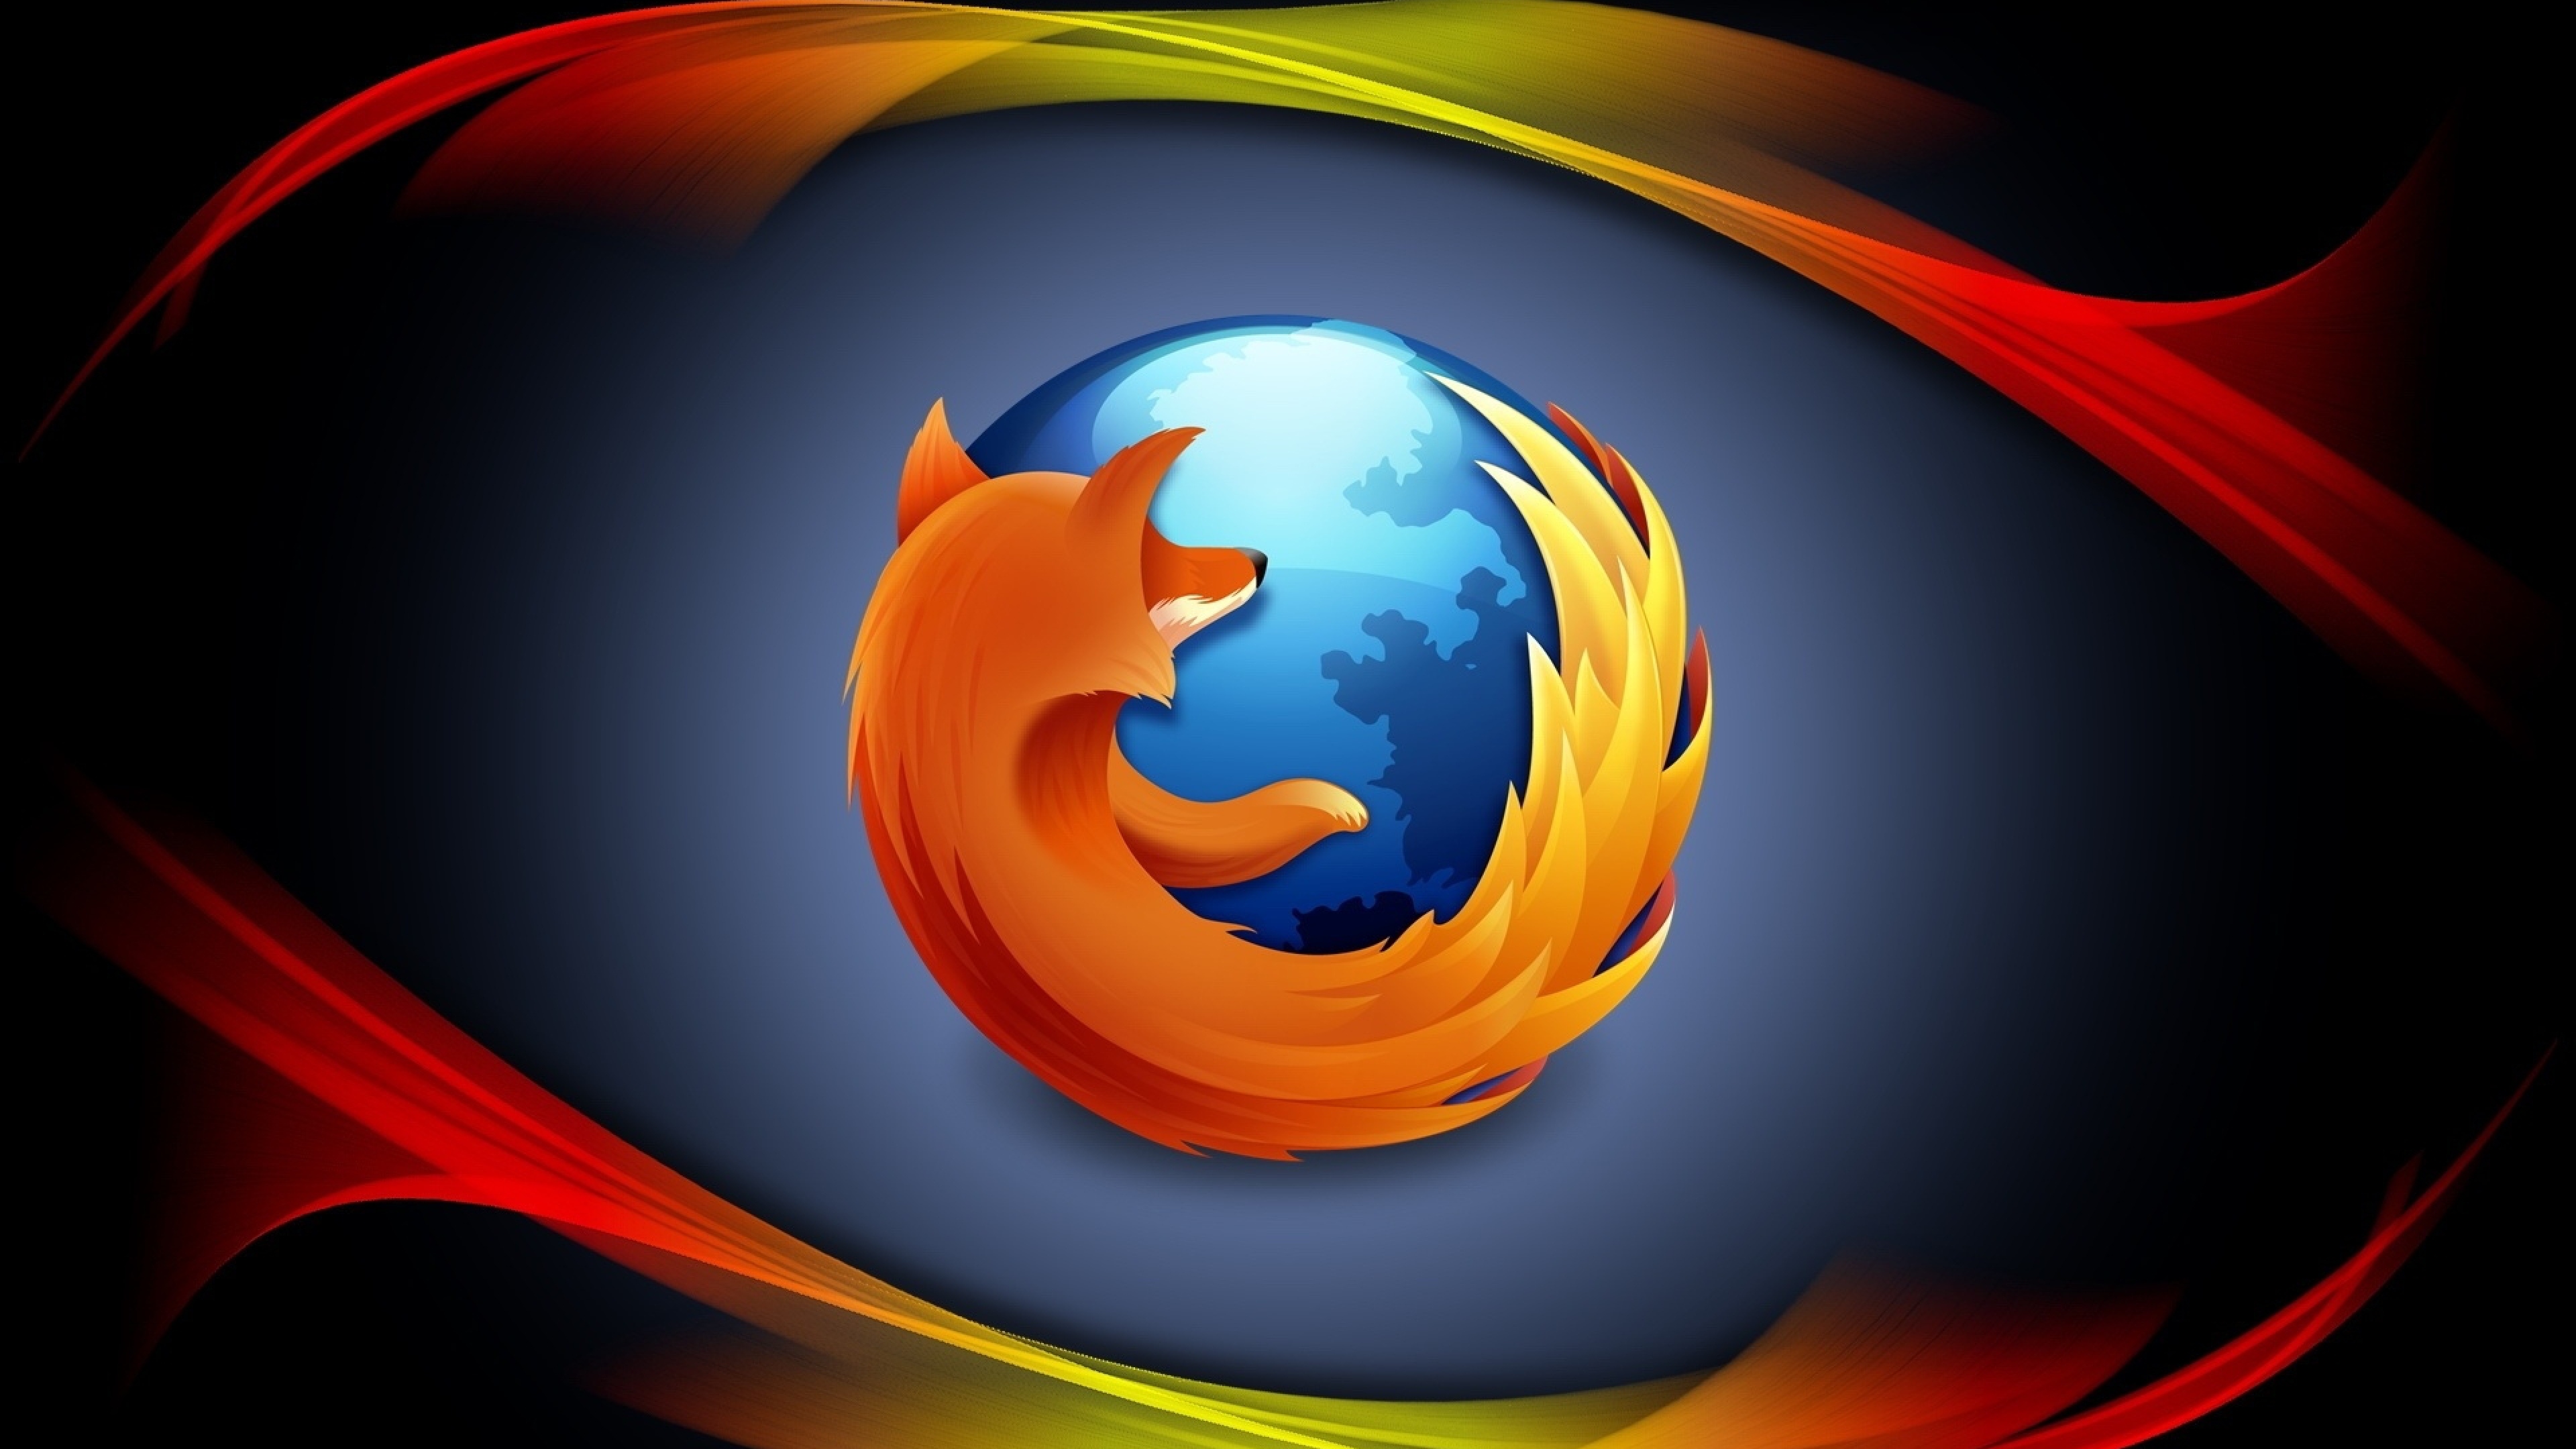 The Mozilla Firefox logo.